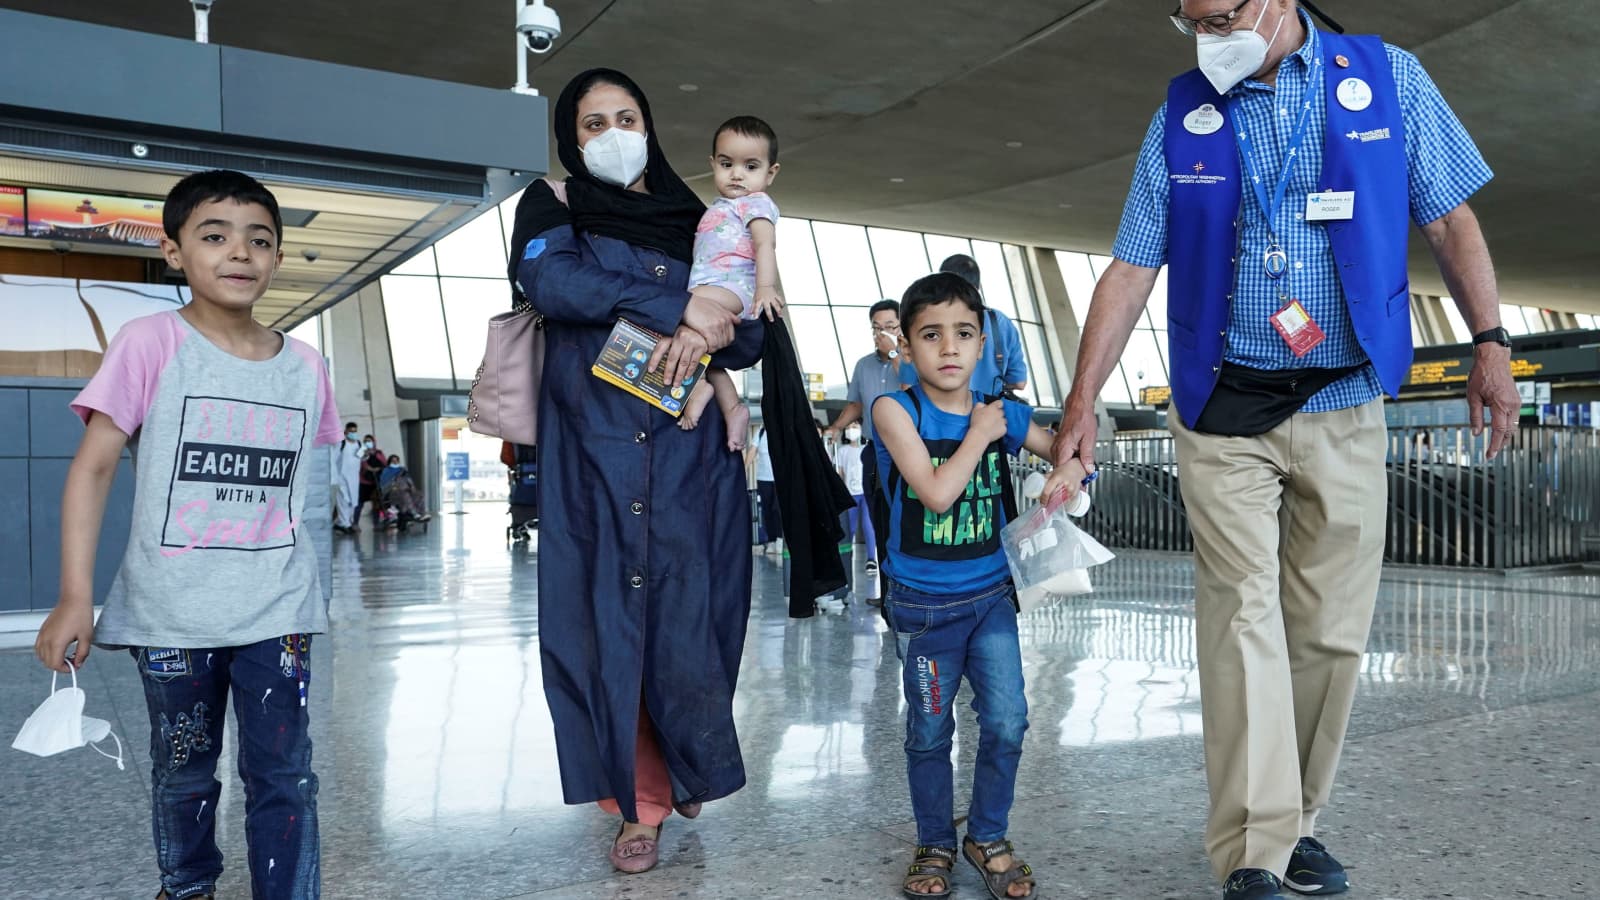 پذیرش ماهانه 1000 مهاجر افغان توسط دولت آلمان